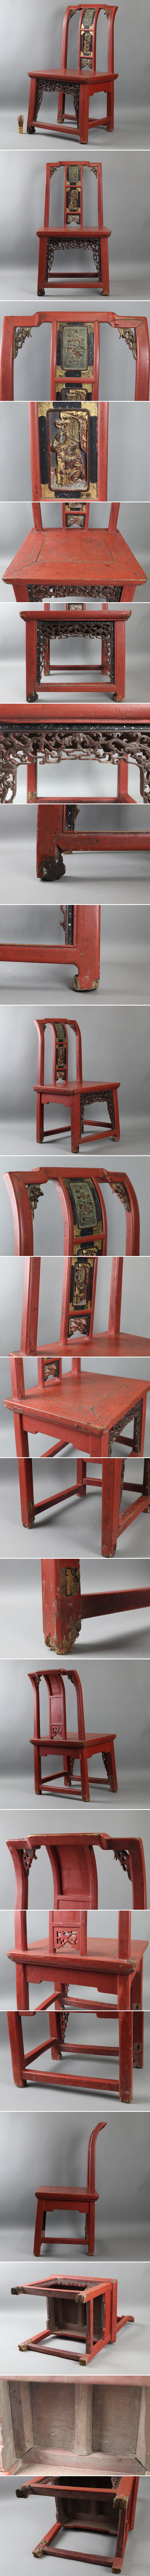 好評得価中国古玩 清代 人物蝙蝠透彫刻 椅子 高77cm 唐物 木彫 インテリア 家具 細密細工 古美術品[a1204] 木工、竹工芸